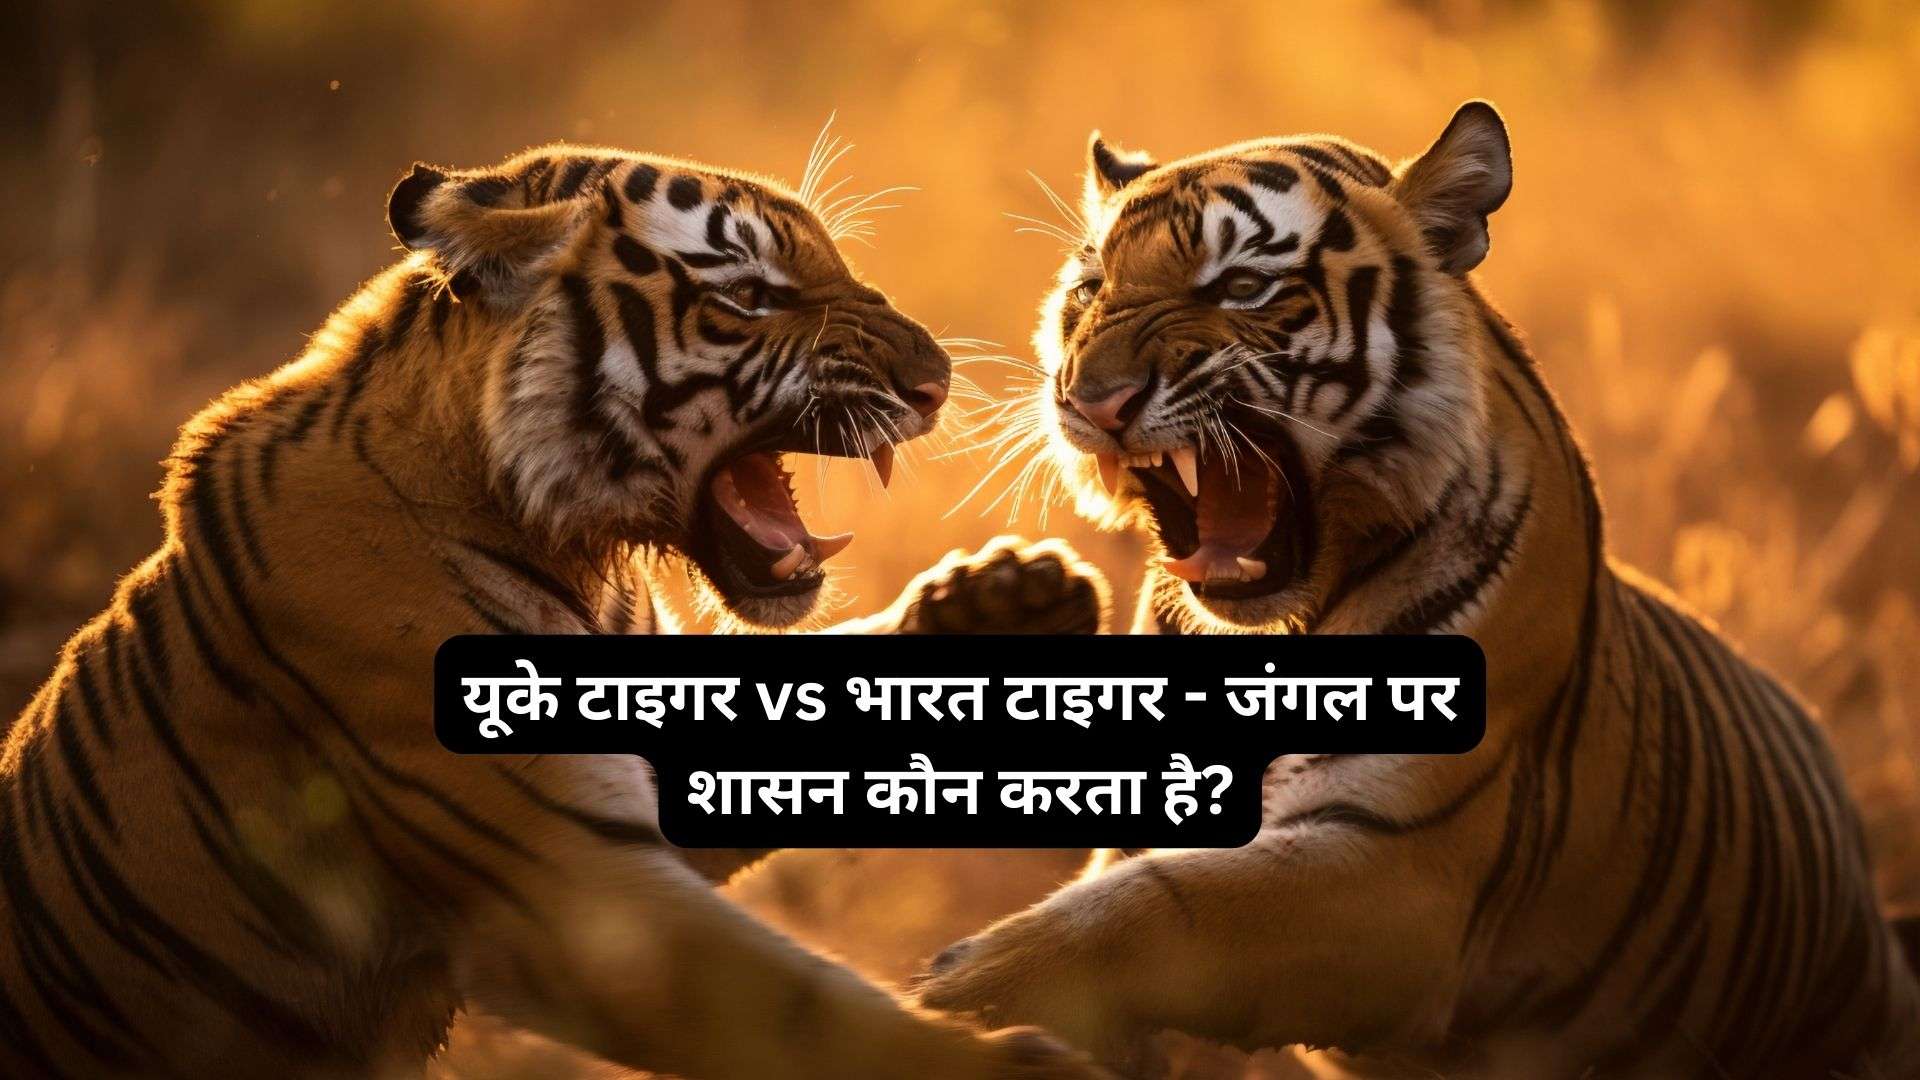 यूके-टाइगर-vs-भारत-टाइगर-जंगल-पर-शासन-कौन-करता-है?